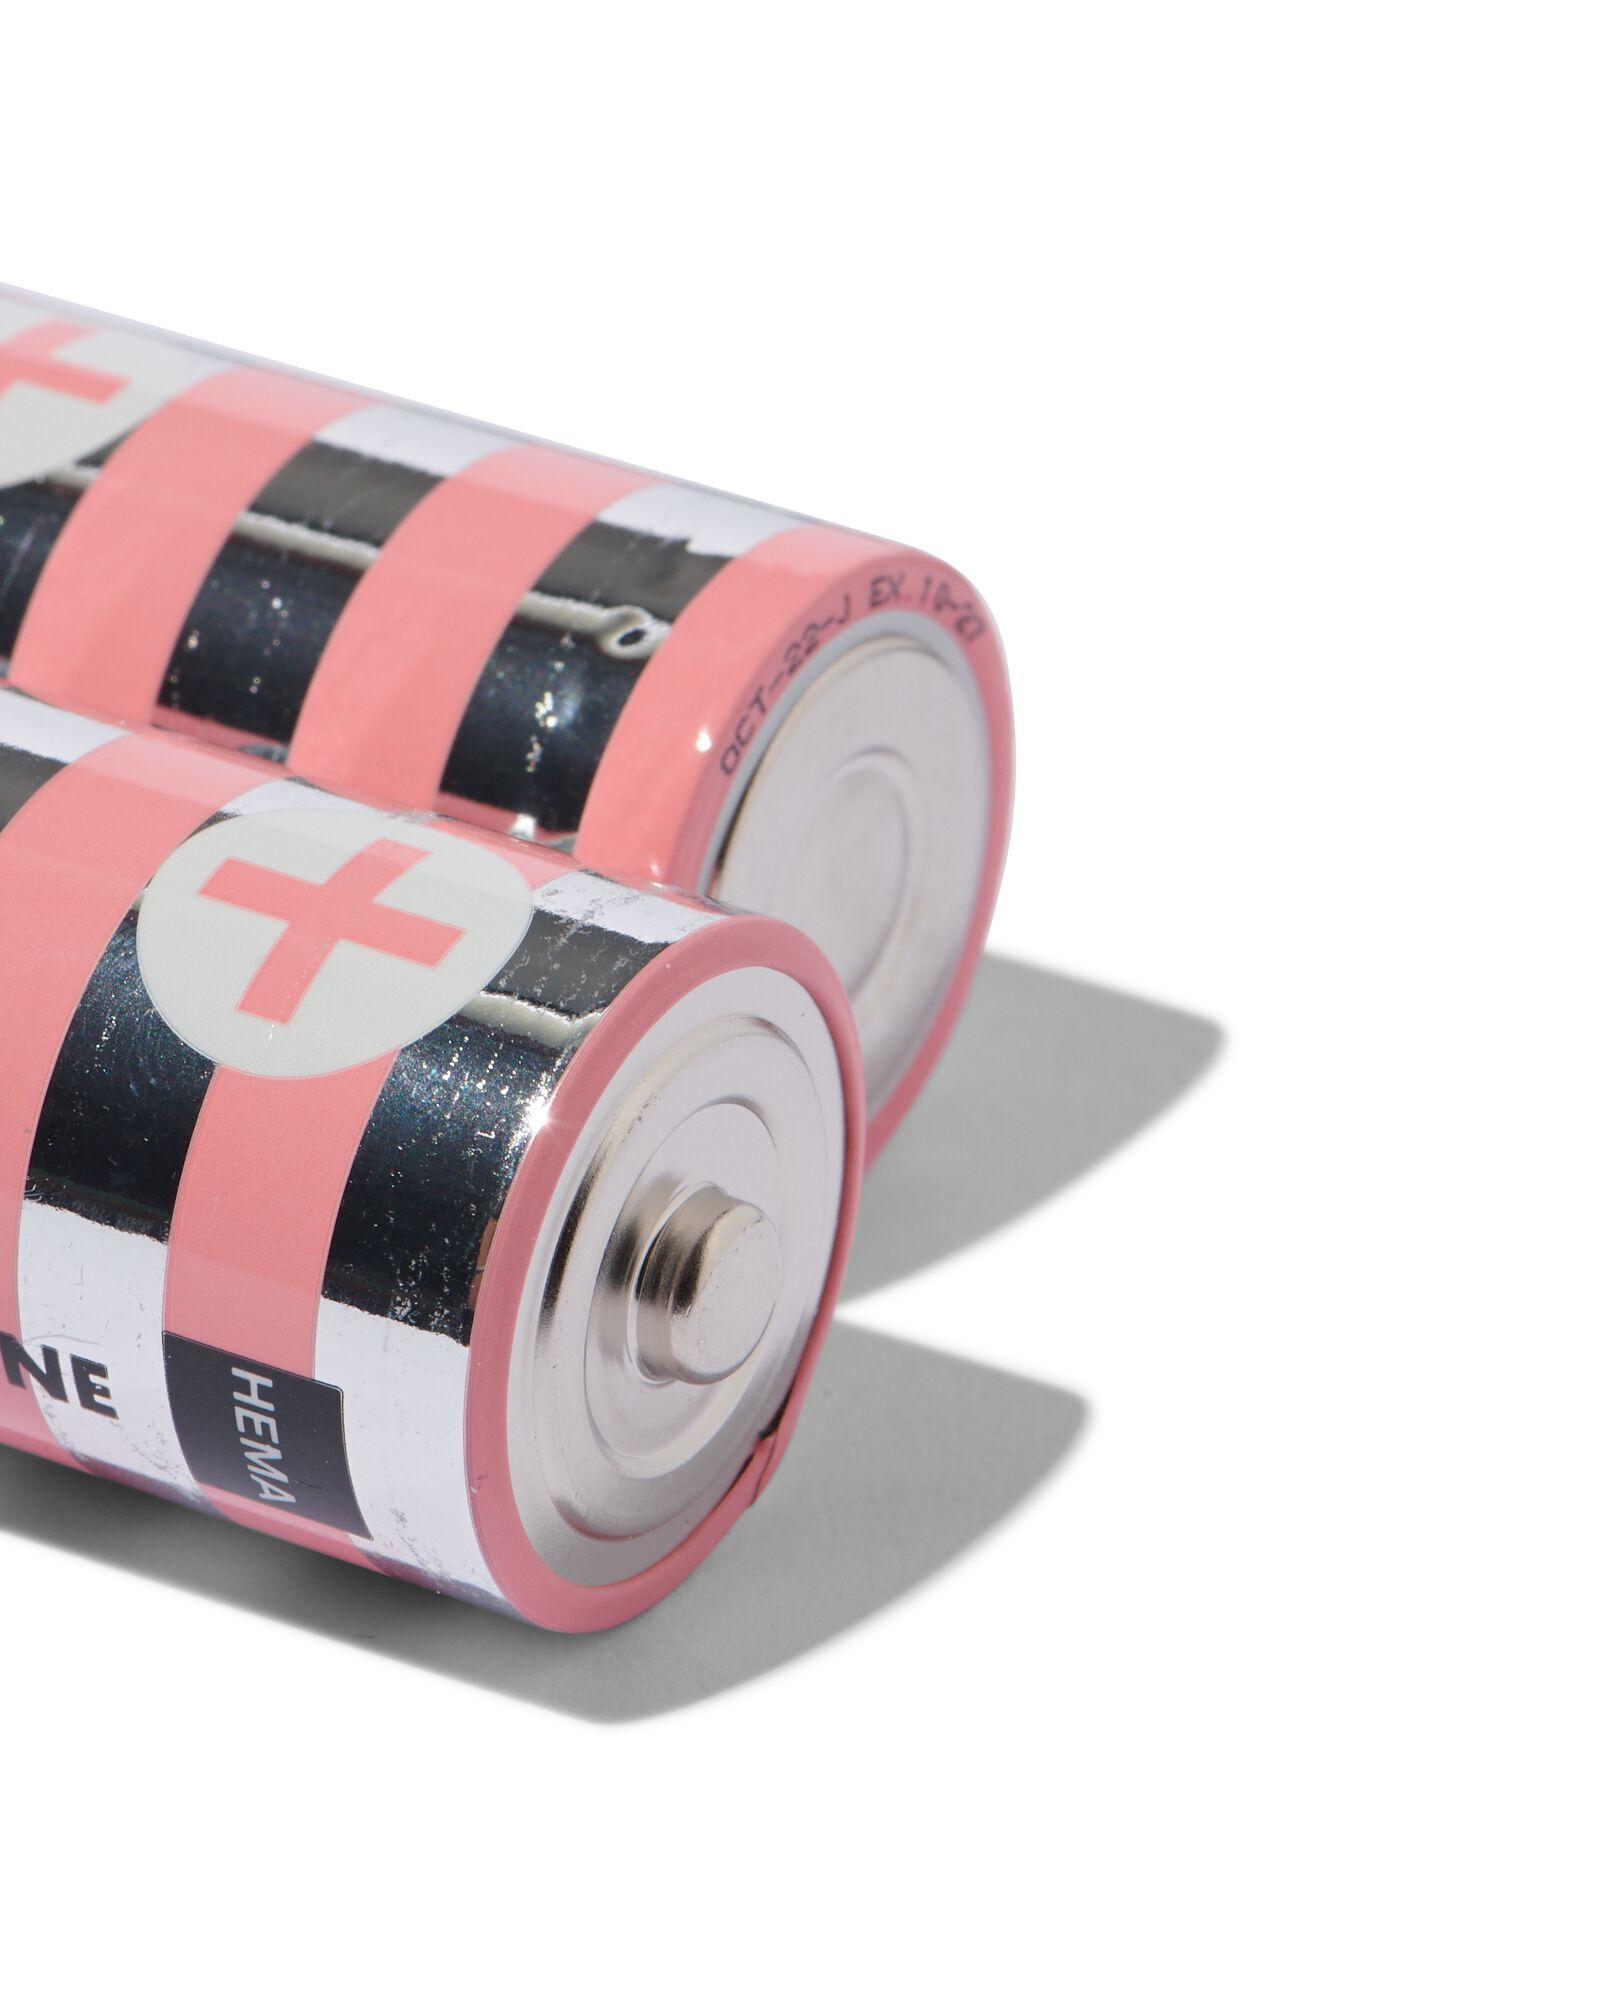 C alkaline extra power batterijen - 2 stuks - HEMA